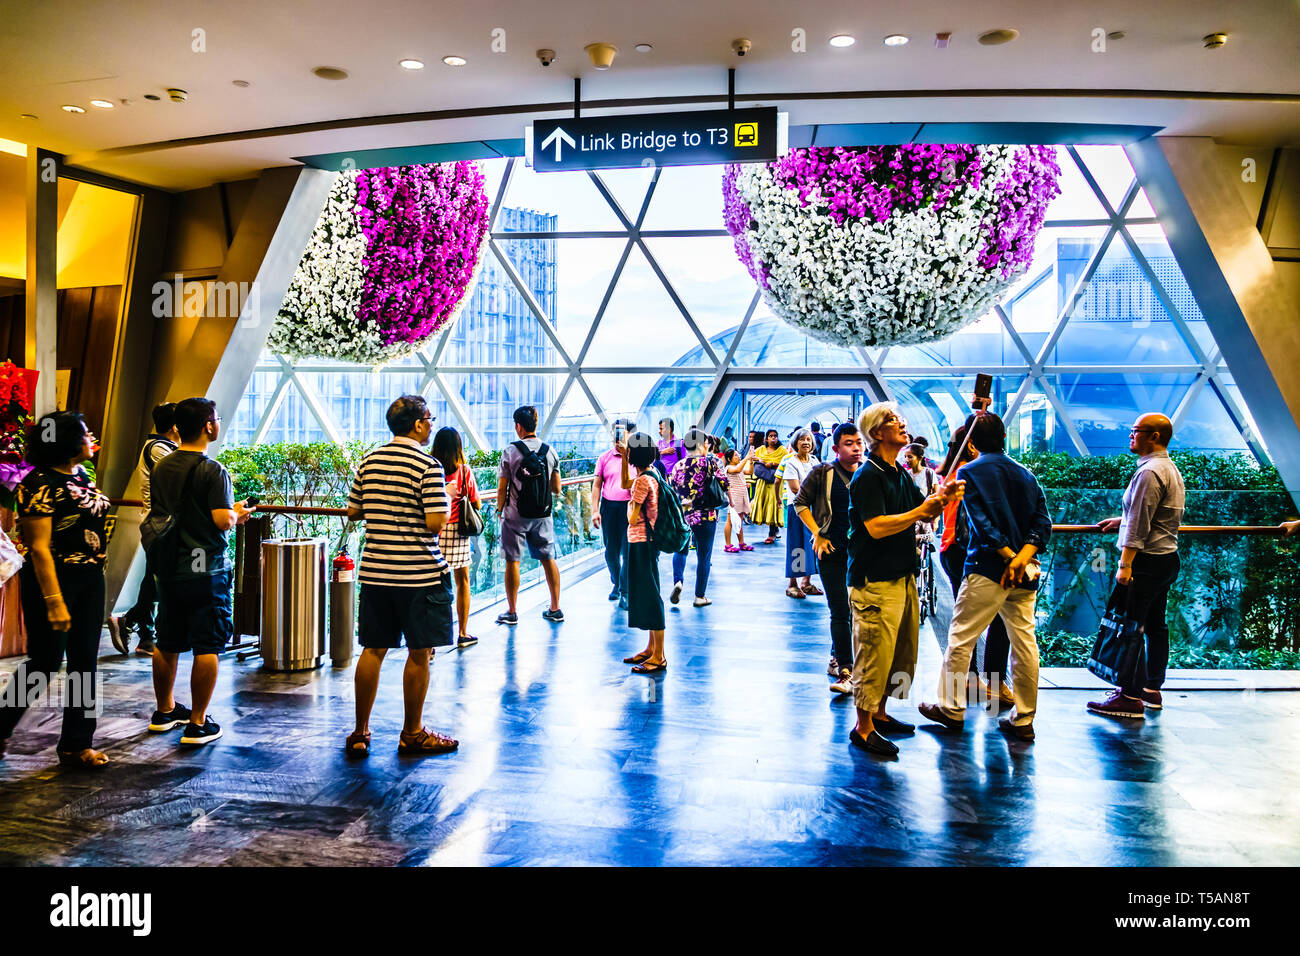 Singapour - Apr 16, 2019 : l'aéroport de Changi est un joyau à usage mixte à l'aéroport de Changi à Singapour qui s'est ouvert le 17 avril 2019. Banque D'Images